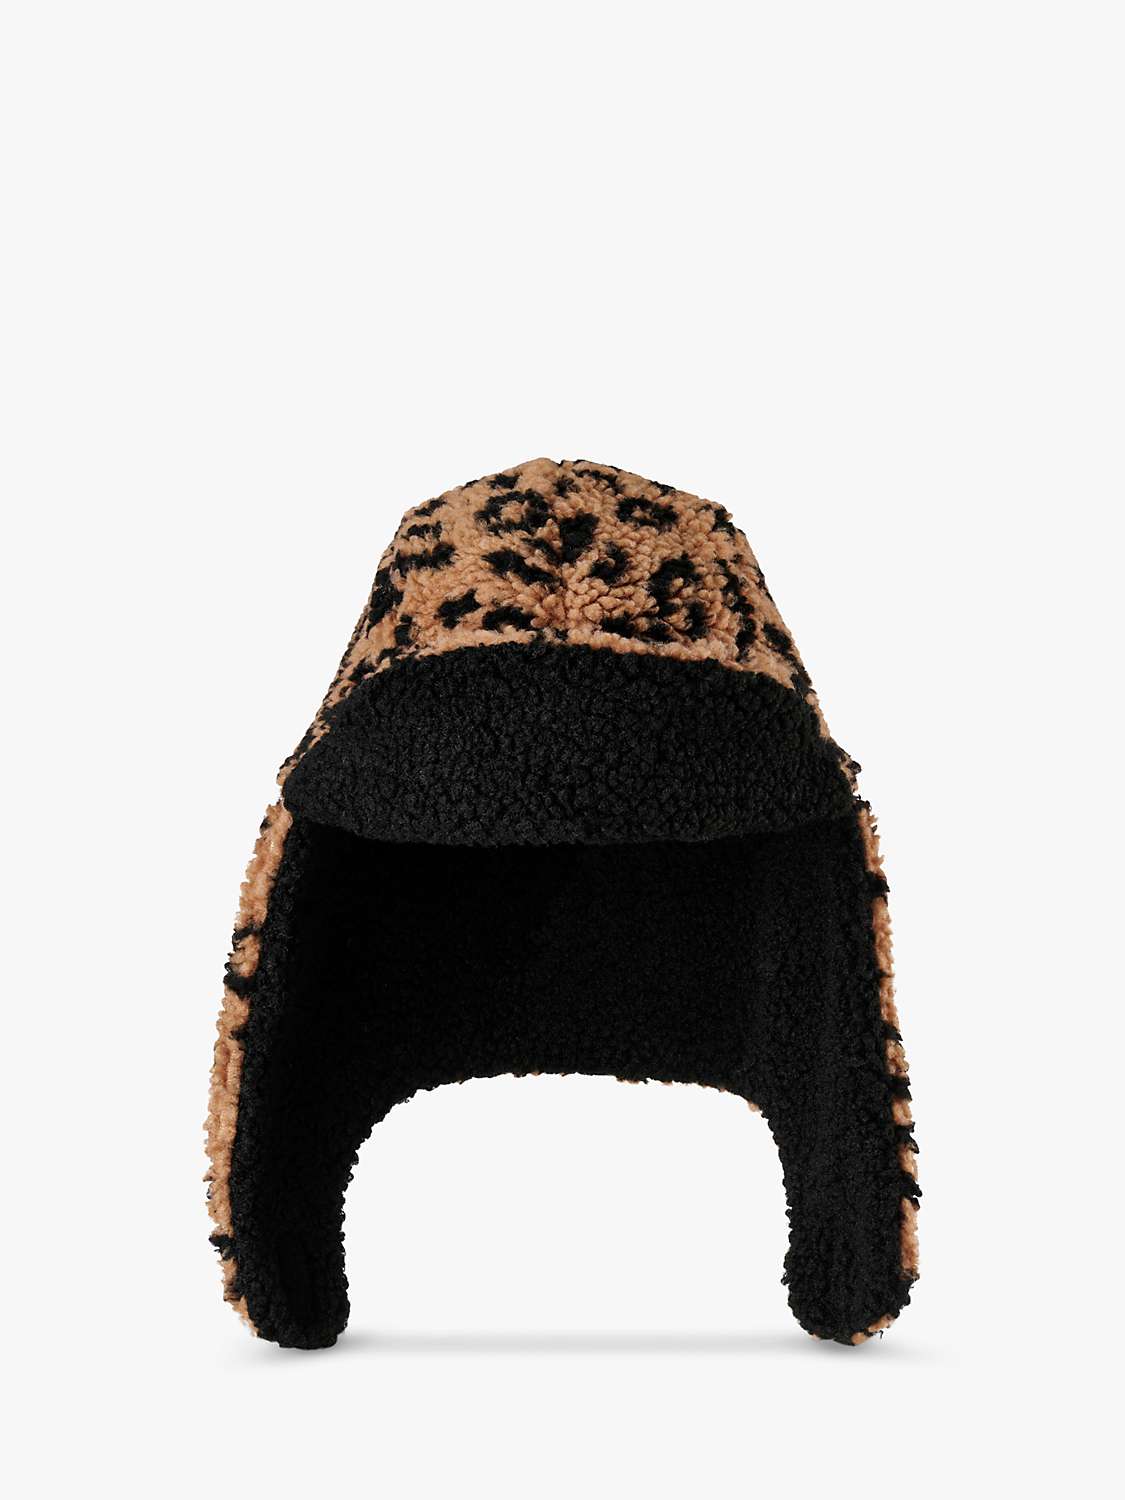 Buy Small Stuff Kids' Leopard Borg Deerstalker Hat, Natural Beige/Black Online at johnlewis.com